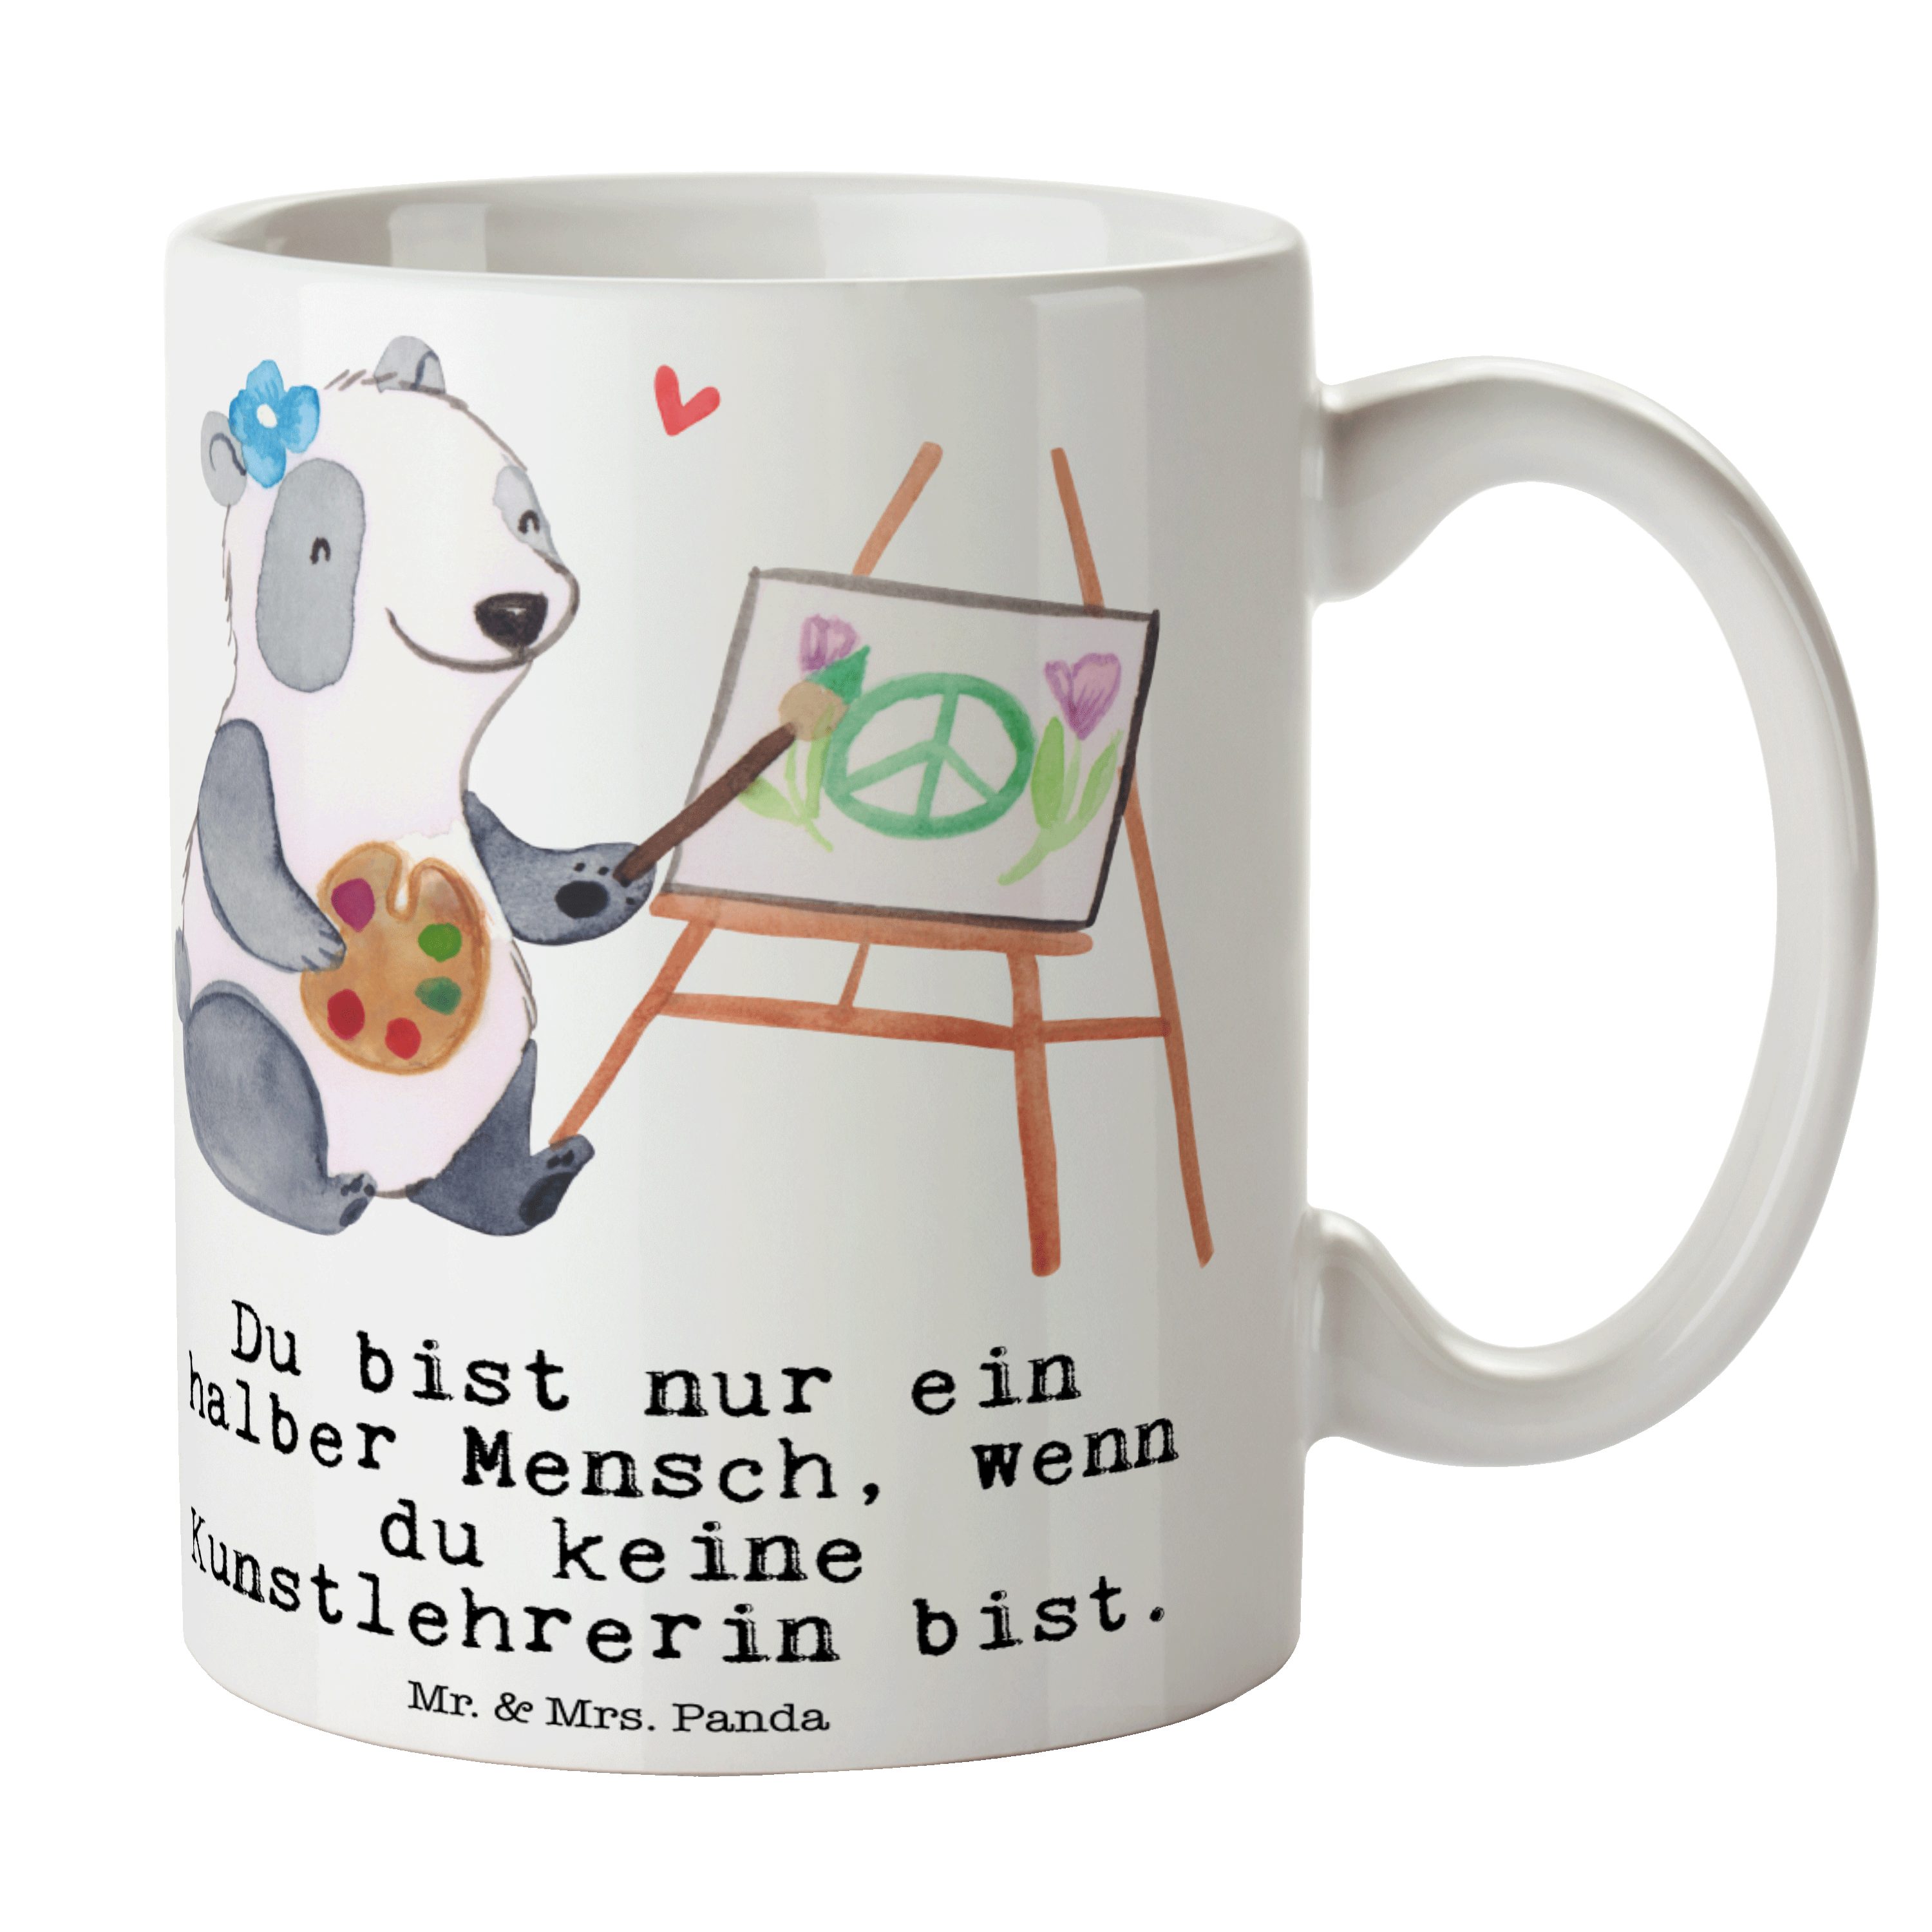 Mr. & Mrs. Panda Tasse Kunstlehrerin mit Herz - Weiß - Geschenk, Kaffeebecher, Jubiläum, Tas, Keramik